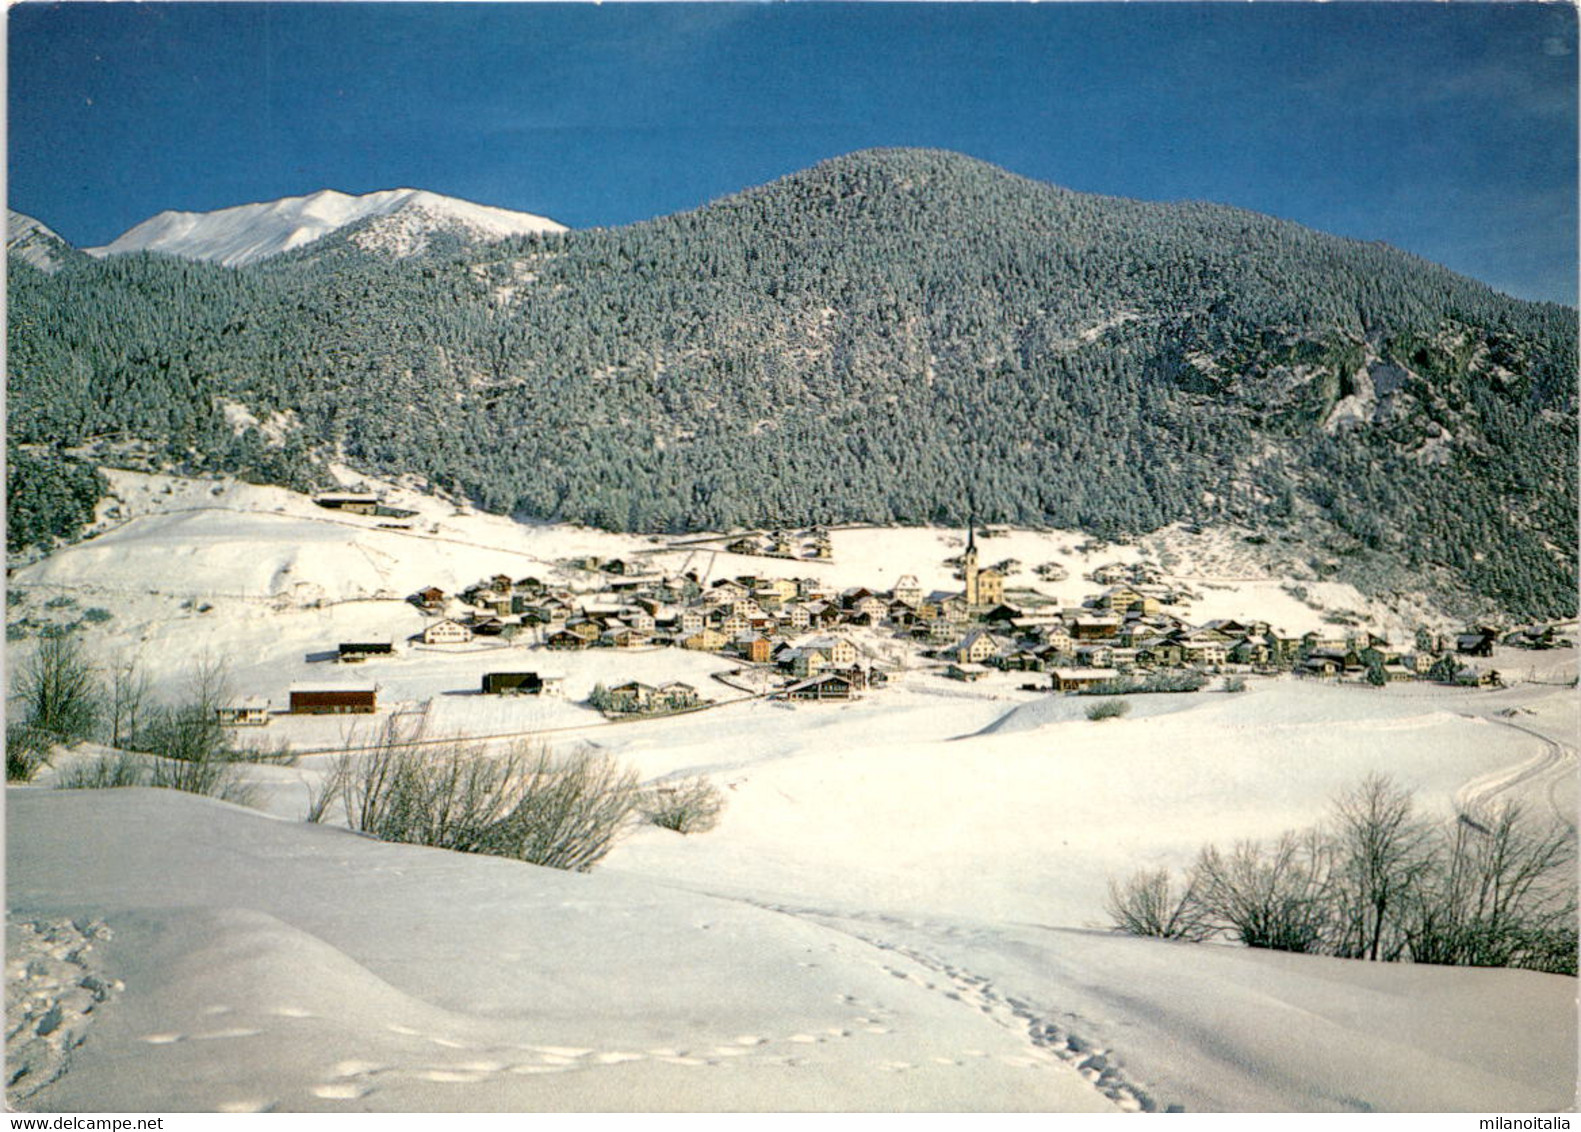 Alvaneu-Dorf (09-26) * 11. 3. 1985 - Alvaneu